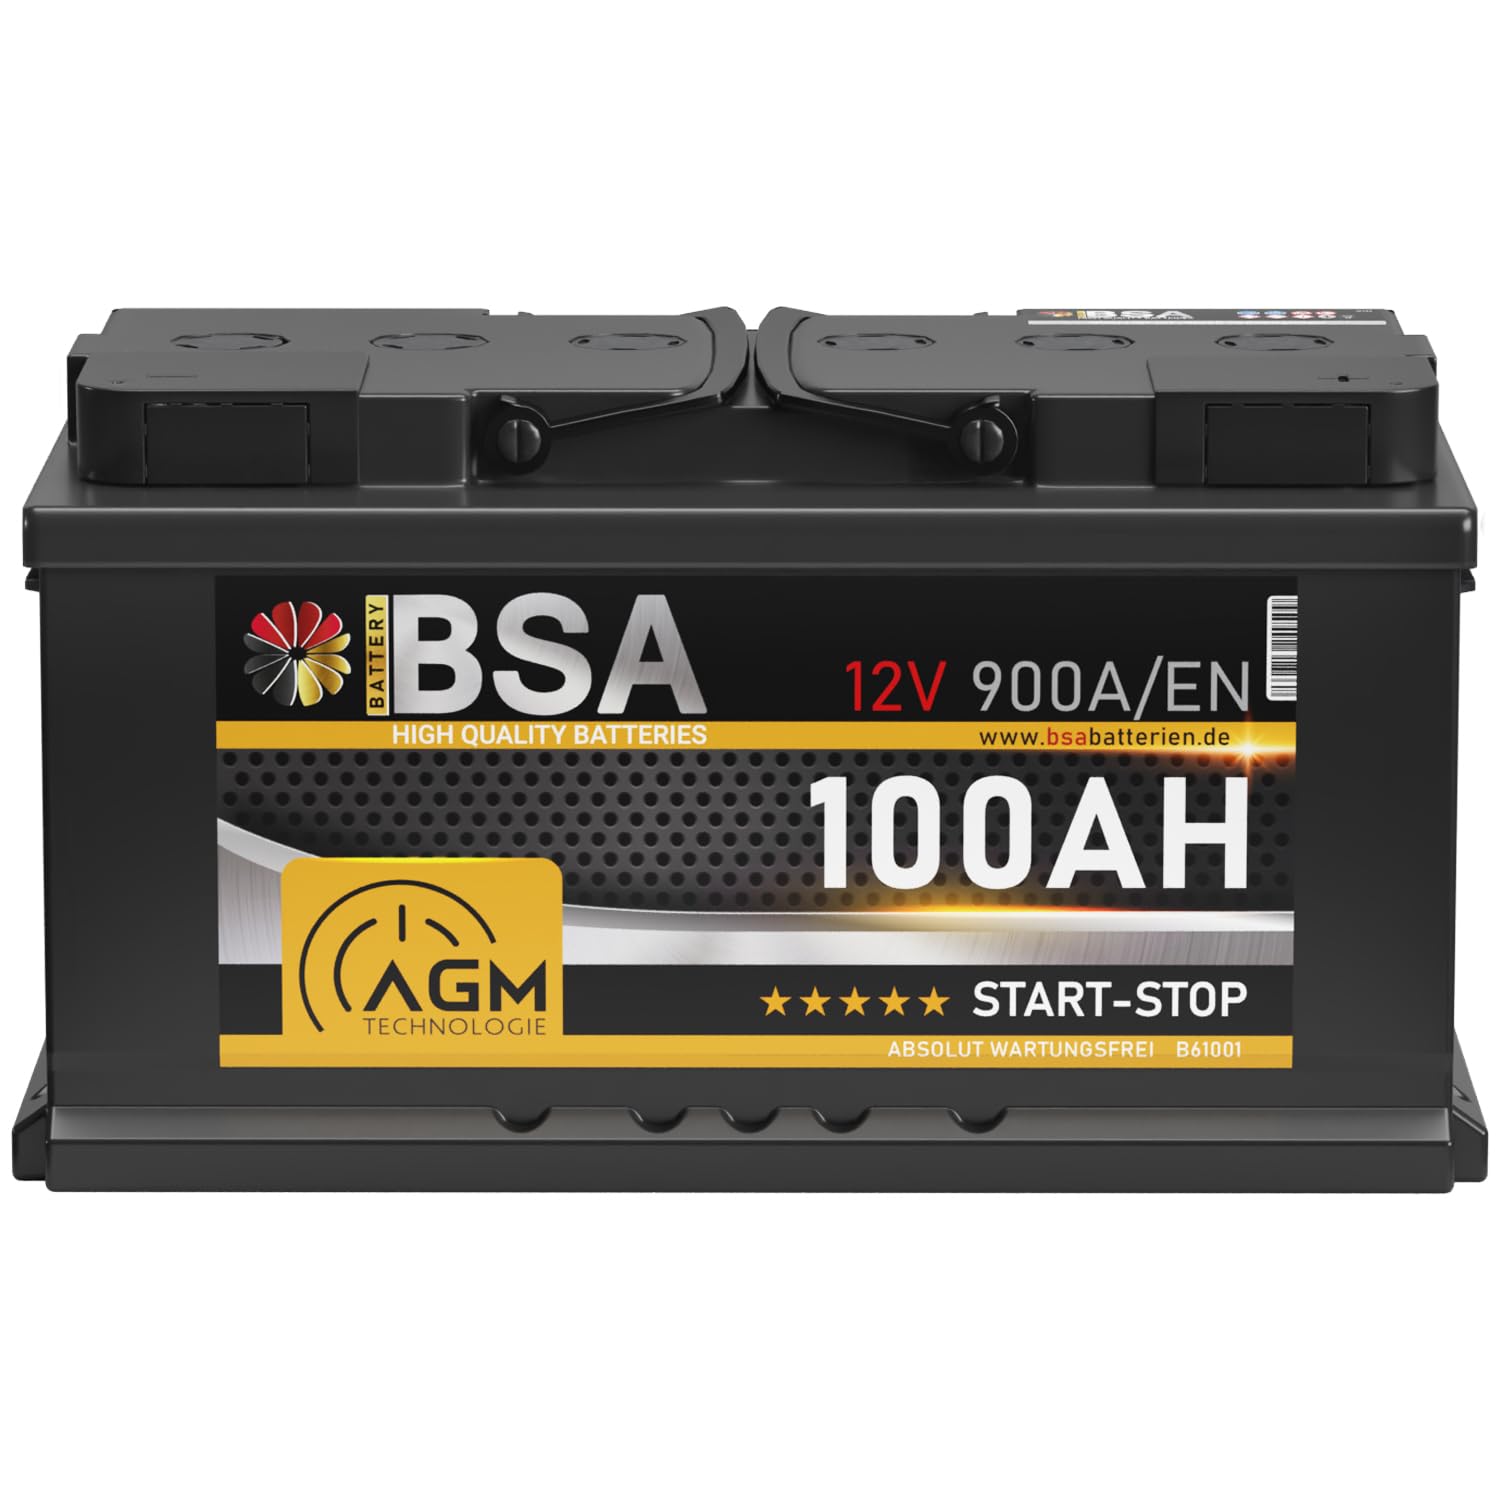 BSA AGM Batterie 100Ah 12V 900A/EN Start-Stop Batterie Autobatterie VRLA statt 95Ah 92Ah 90Ah von BSA BATTERY HIGH QUALITY BATTERIES